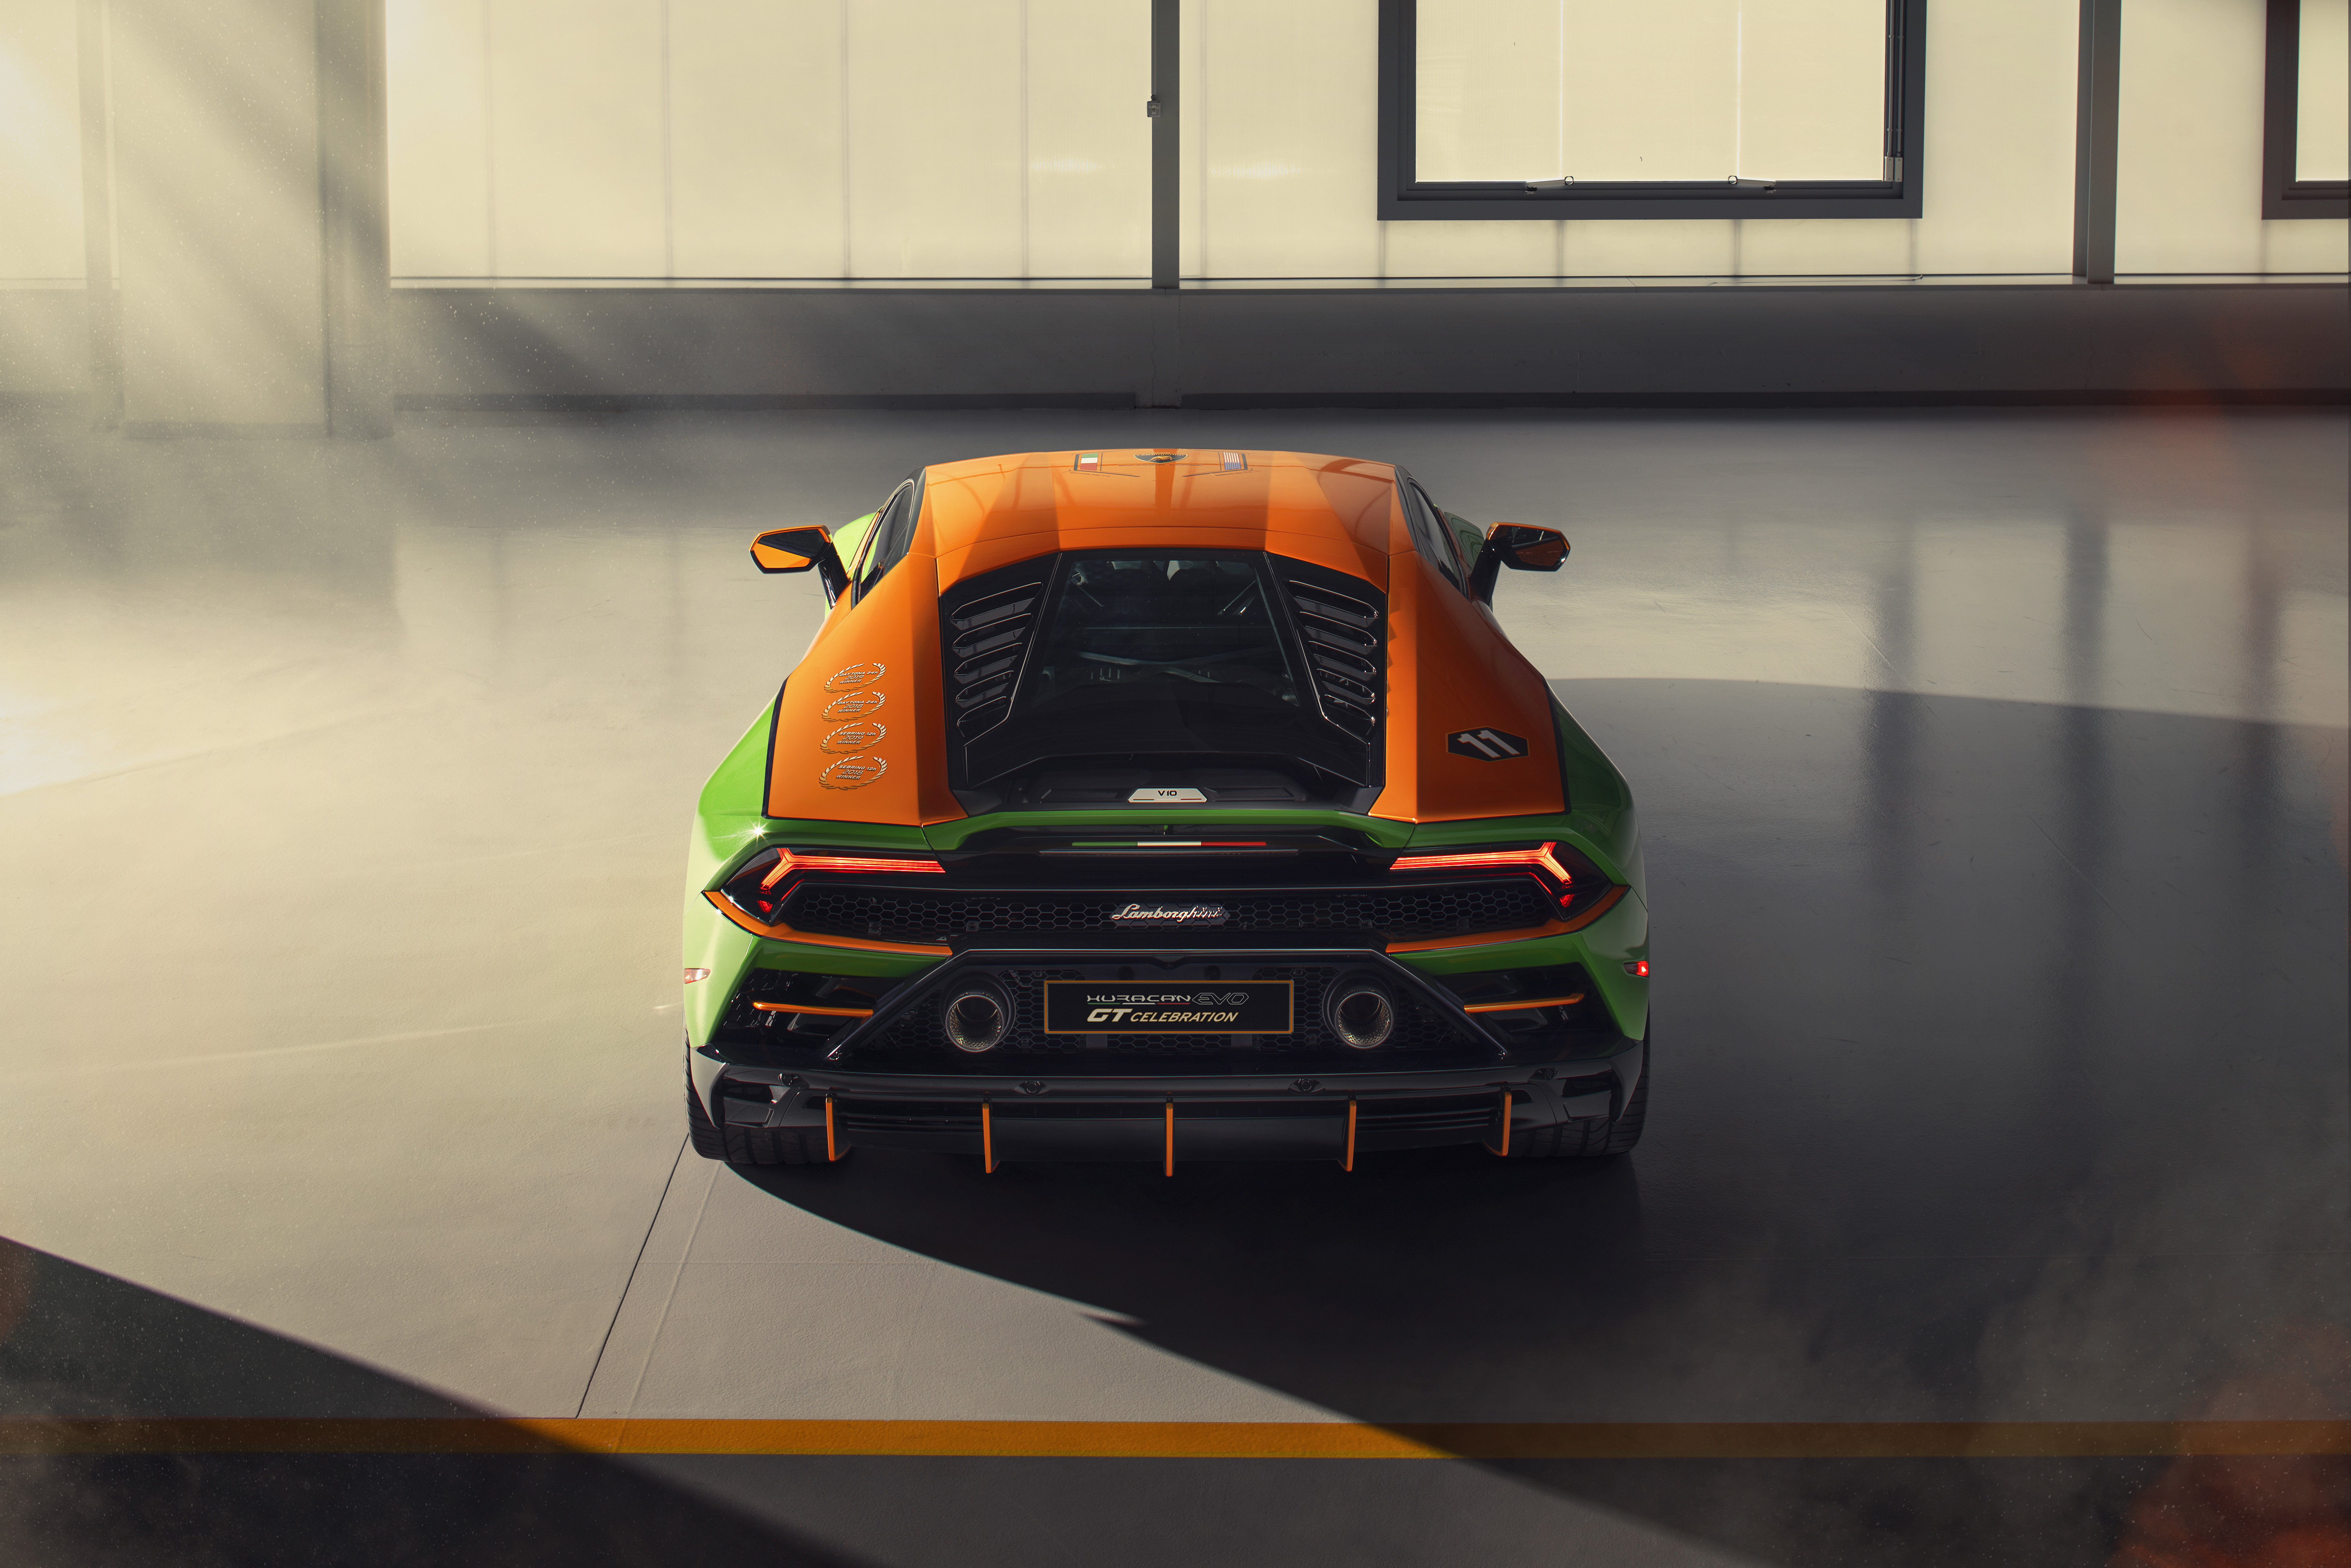 Free download wallpaper Lamborghini, Supercar, Vehicles, Lamborghini Huracán Evo Gt Celebration on your PC desktop